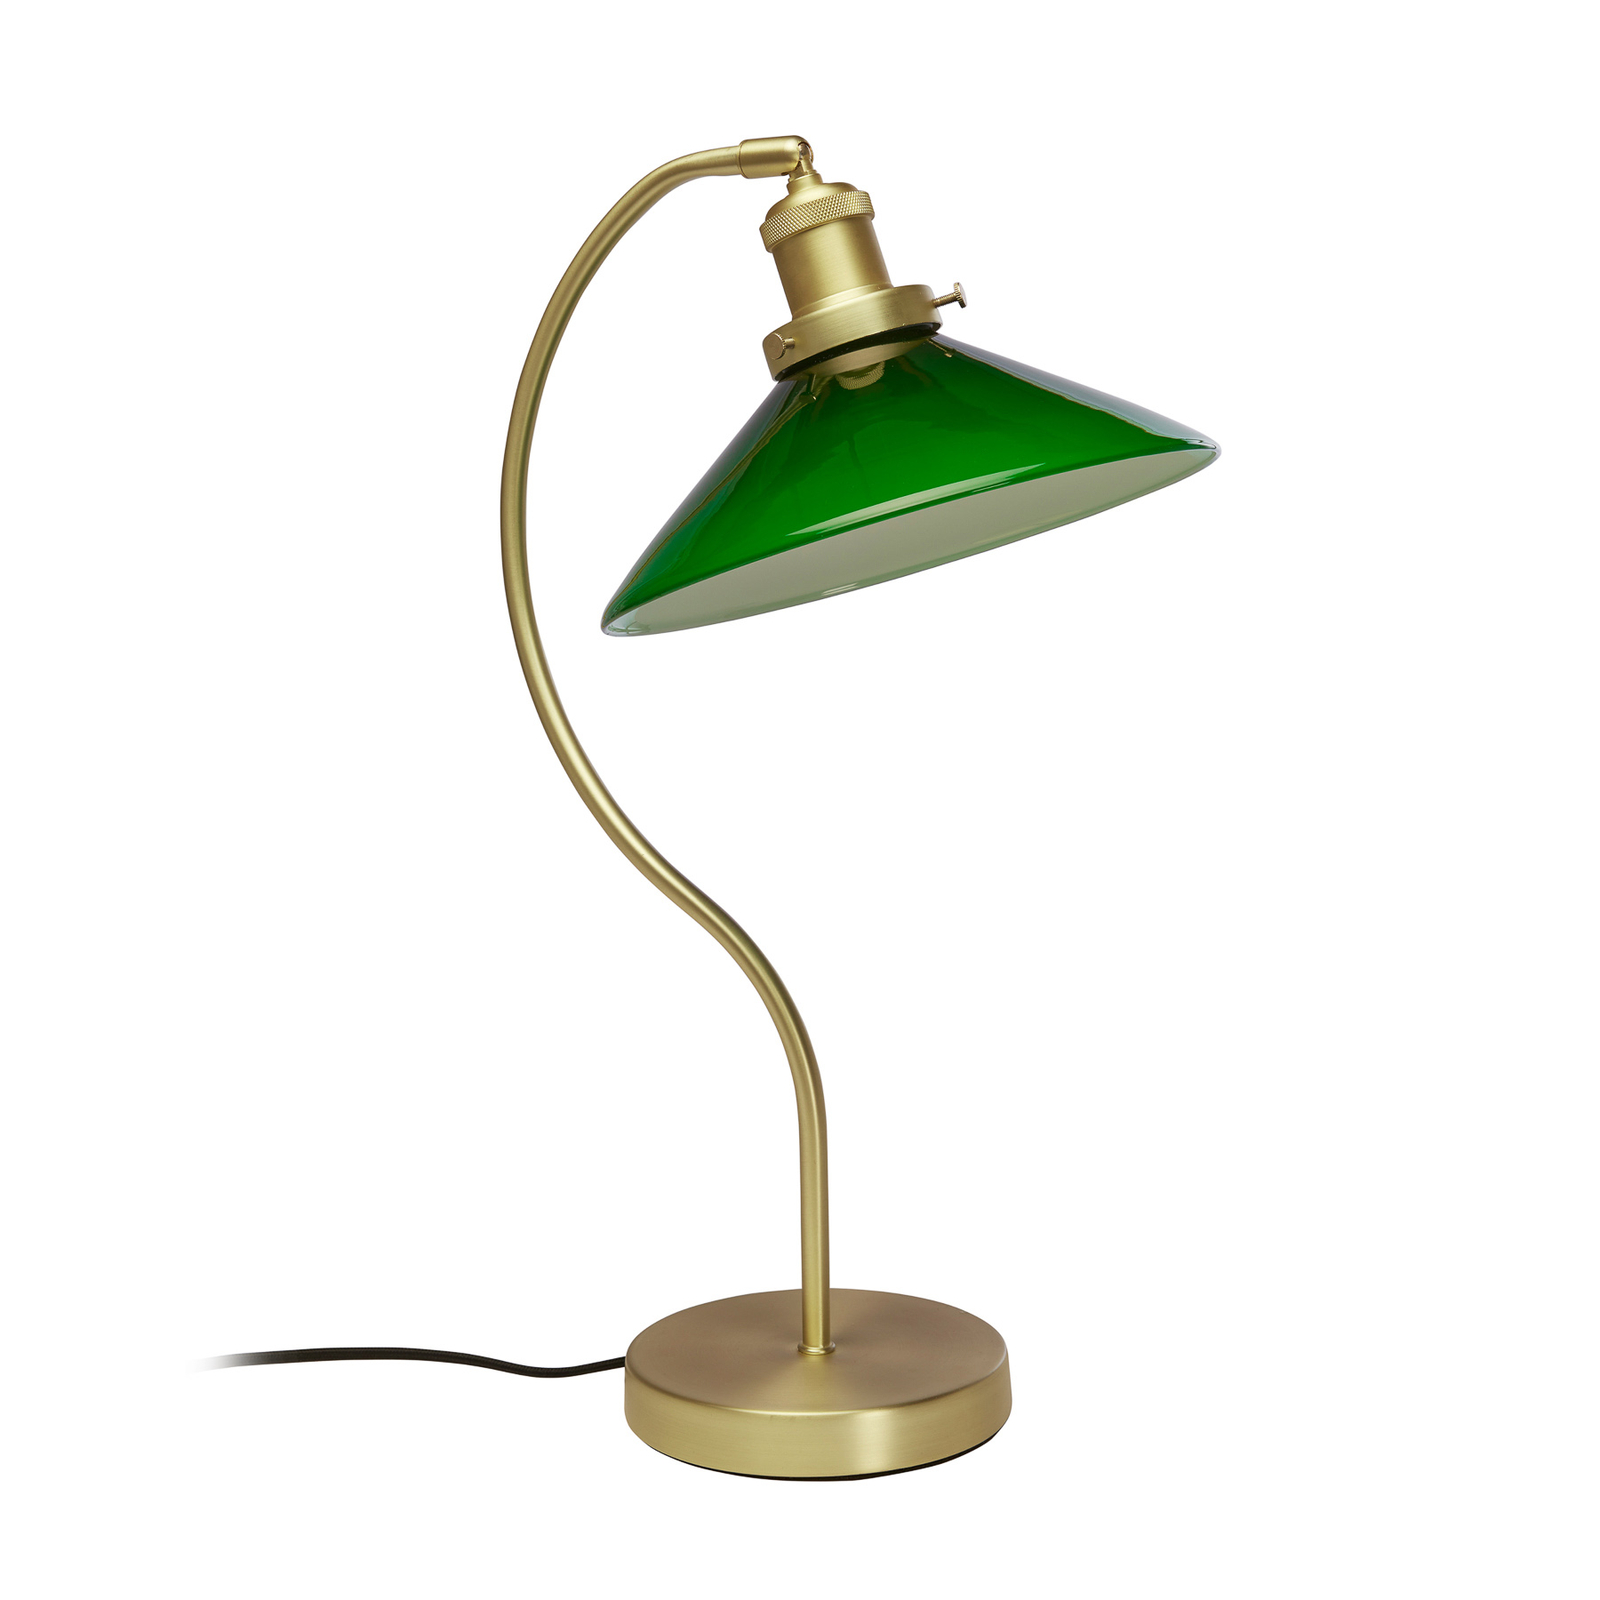 Lampa stołowa PR Home Axel, kolor mosiądz, zielony szklany klosz